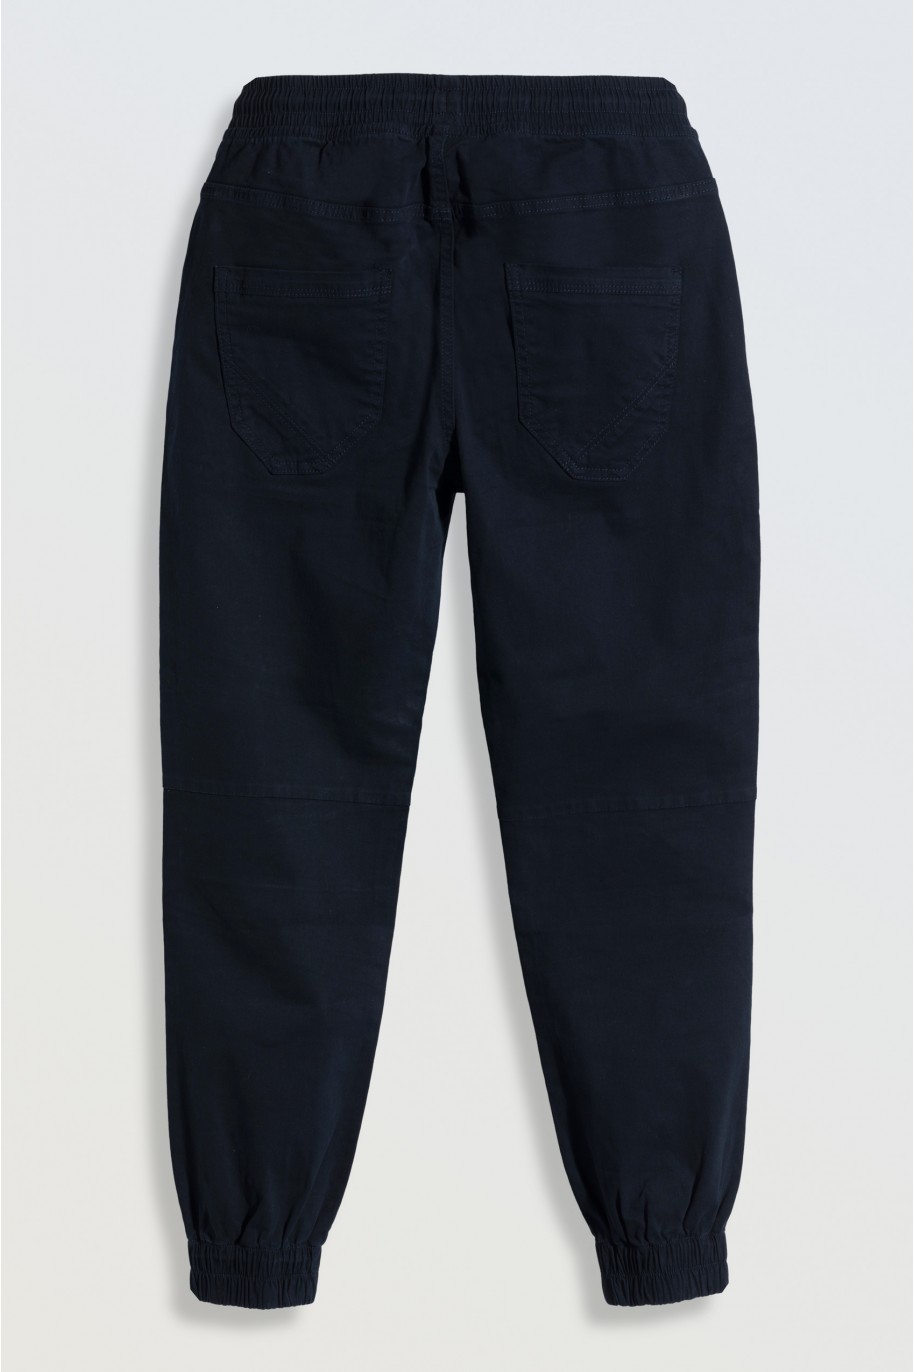 Granatowe spodnie typu joggery z modnymi przeszyciami - 46668